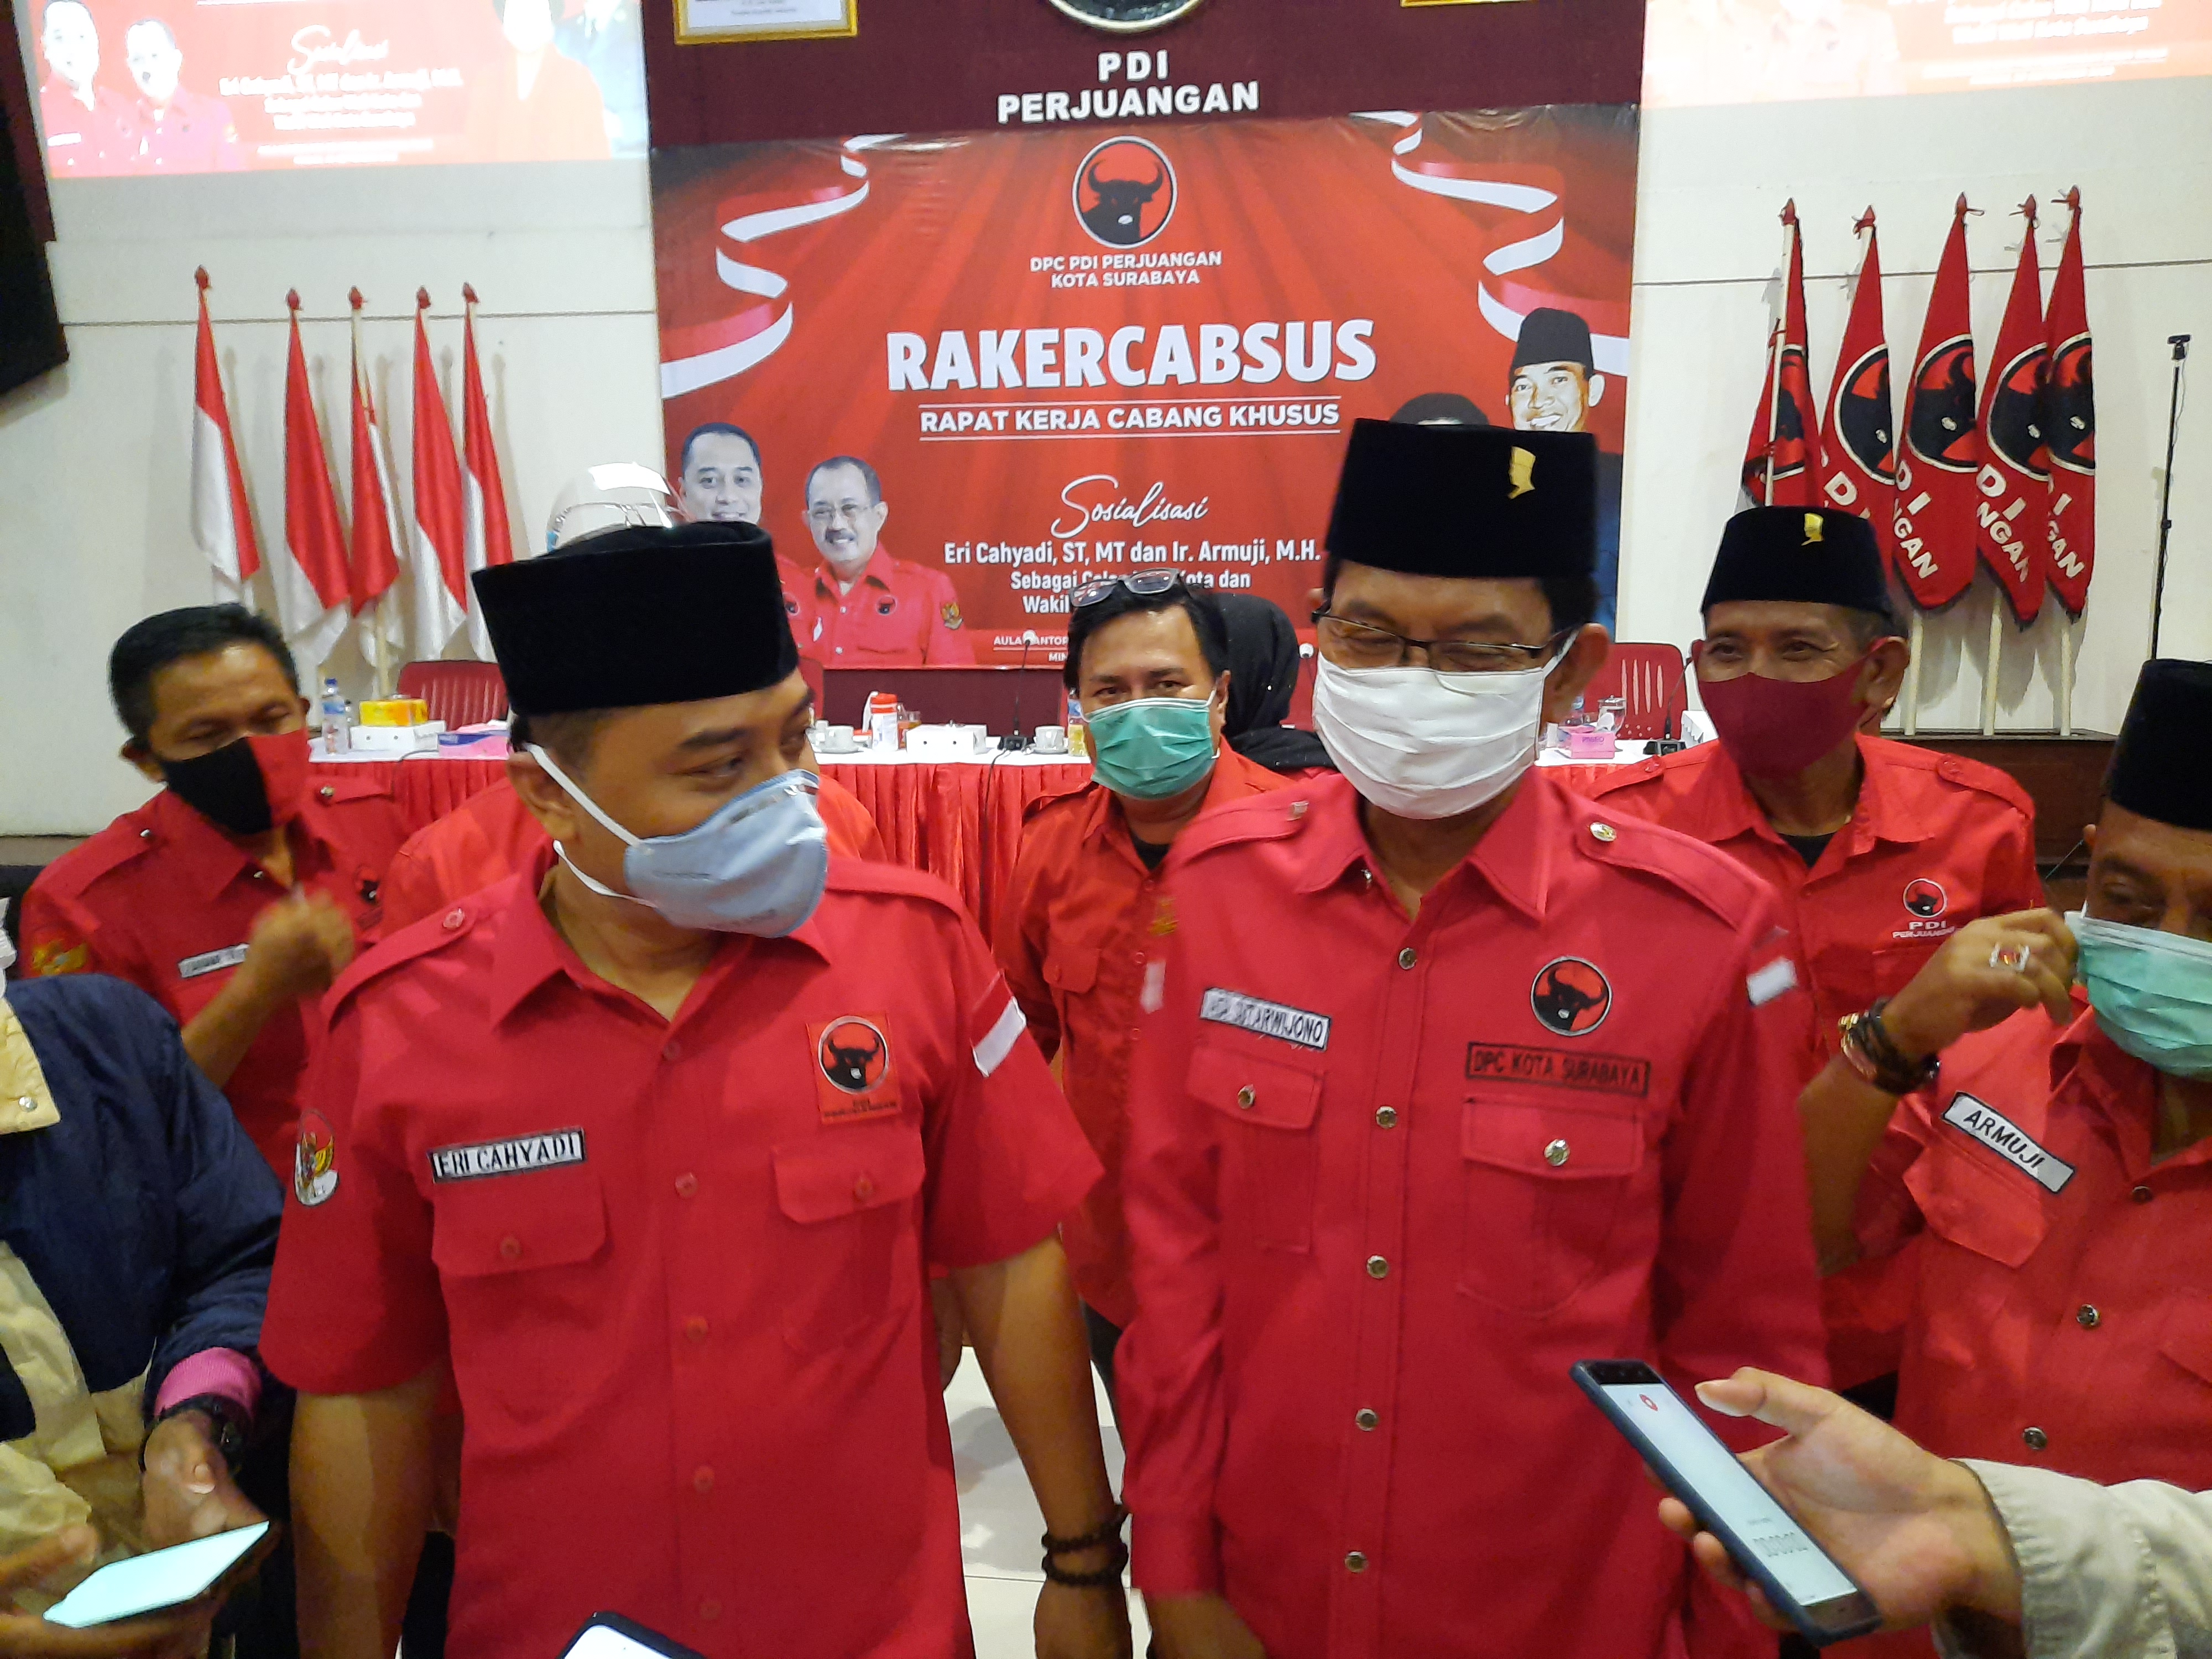 Ketua DPC PDI Perjuangan Kota Surabaya Adi Sutarwijono dan Eri Cahyadi memberikan keterangan kepada wartawan usai Rakercabsus PDI Perjuangan, Sabtu 20 September 2020. (Foto: Alief Sambogo/Ngopibareng.id)